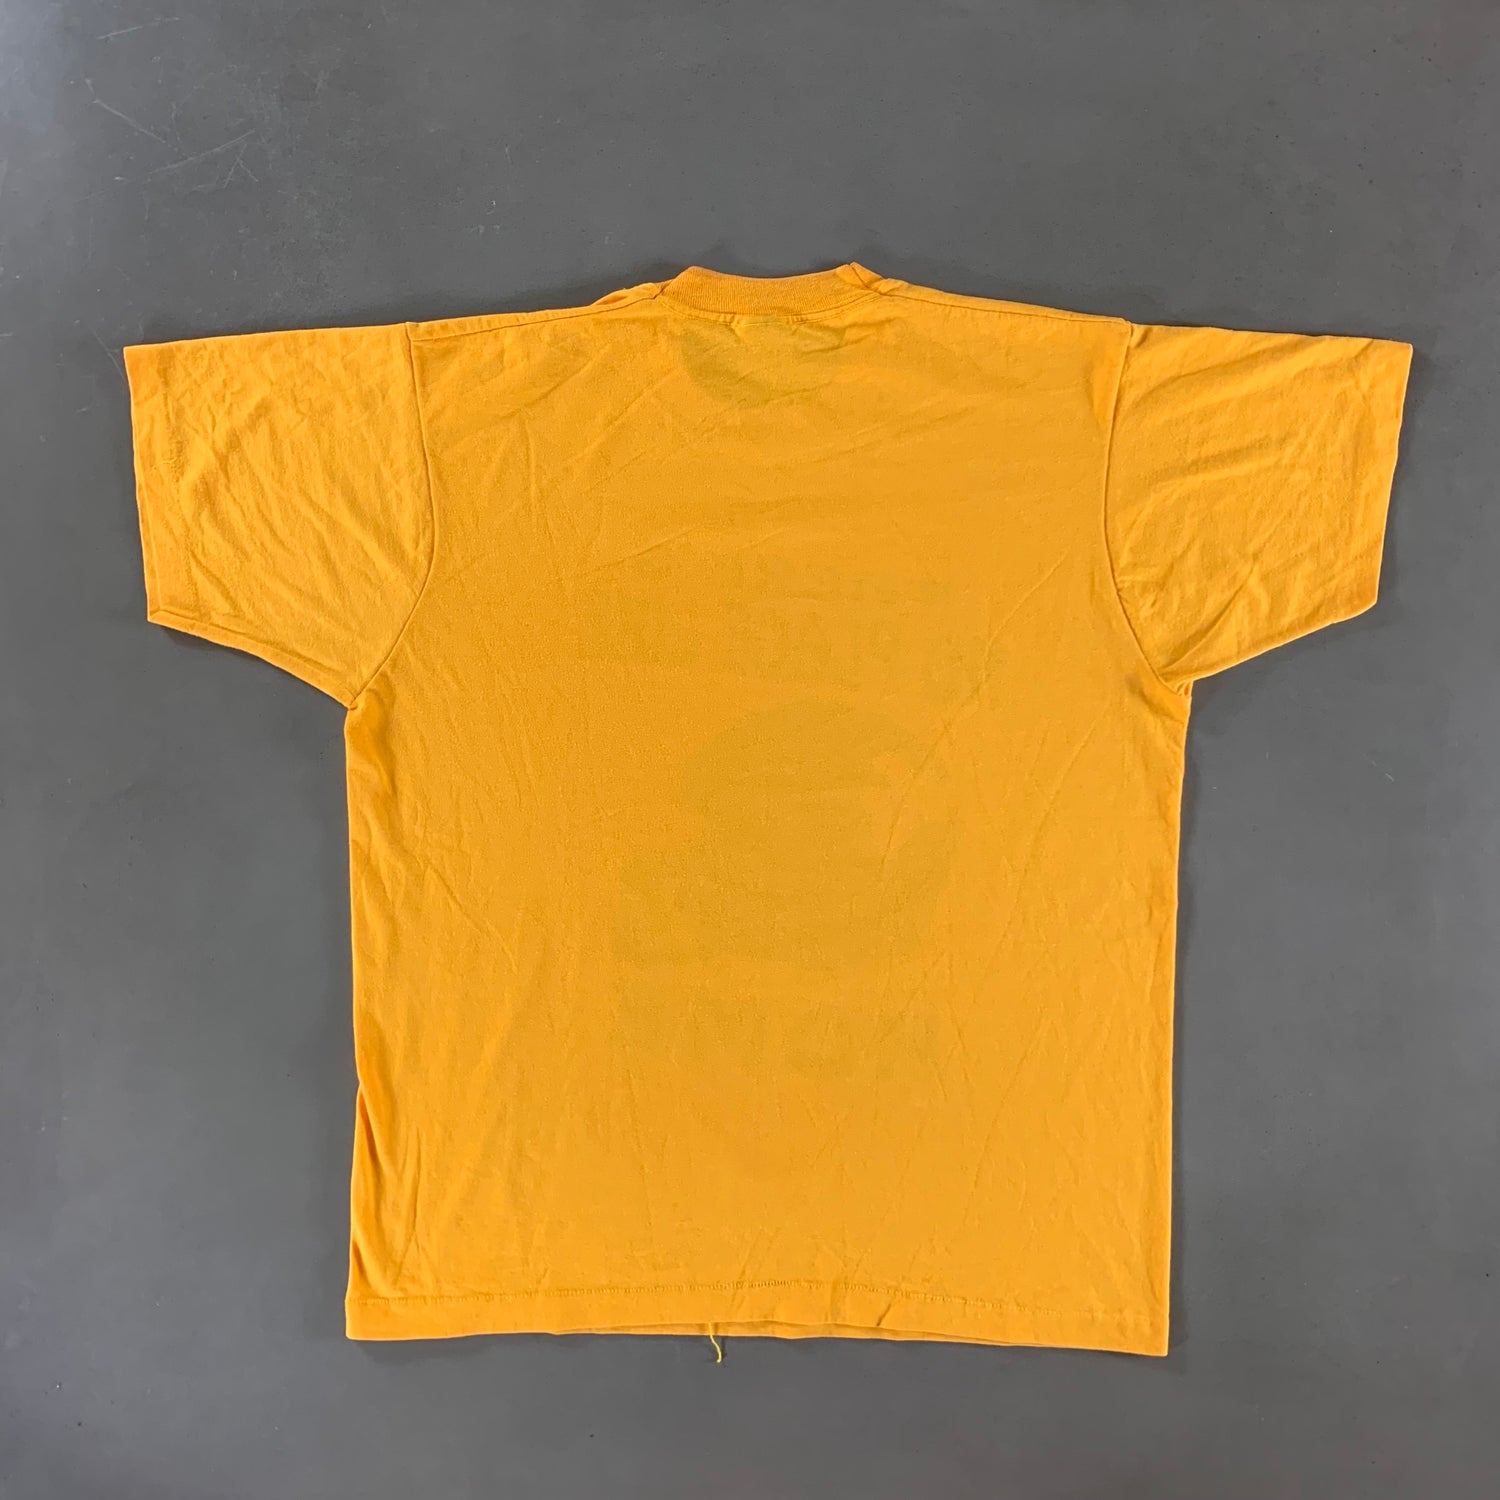 Vintage 1980s West Virginia University T-shirt size XL